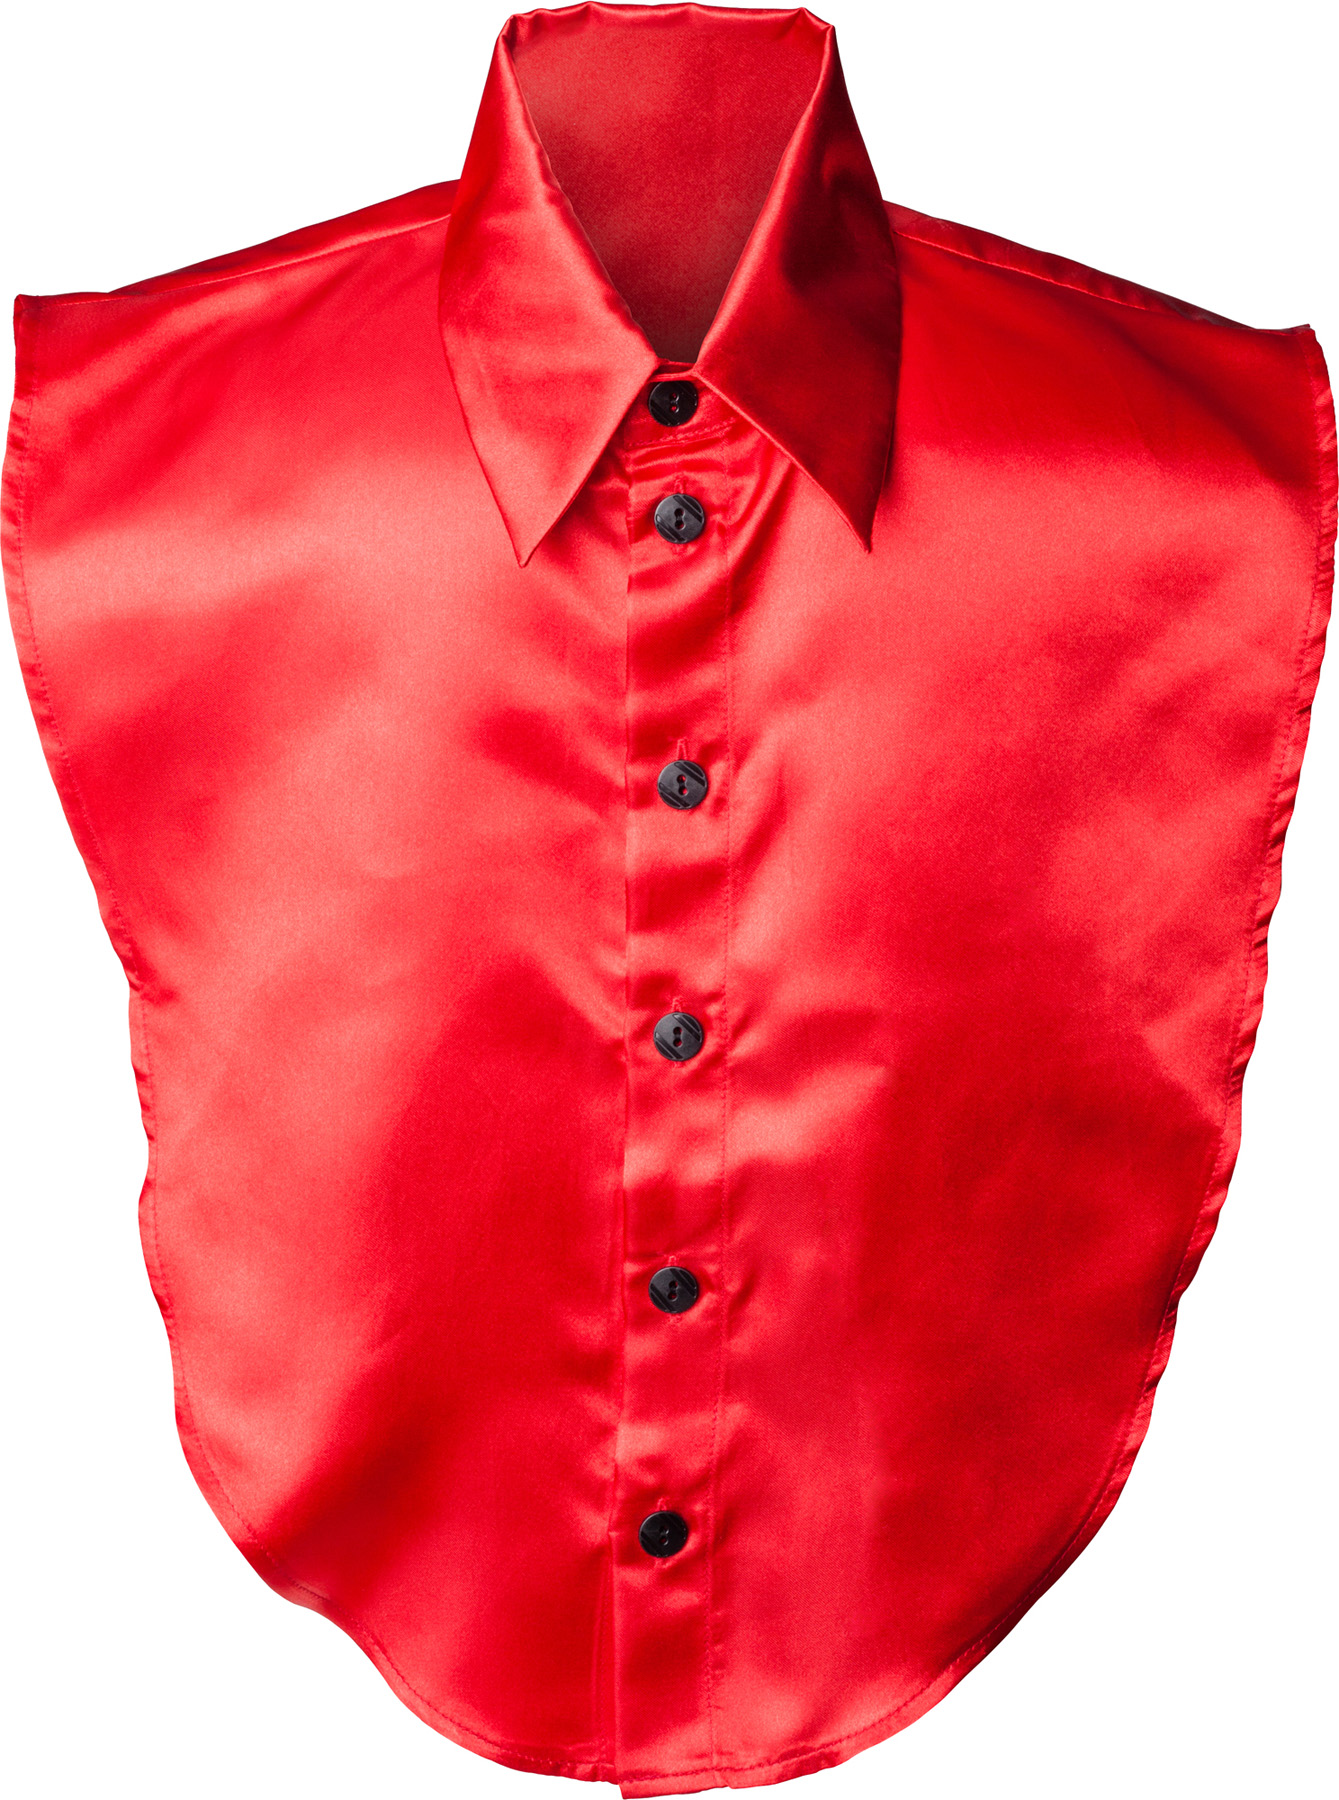 insertion de chemise rouge